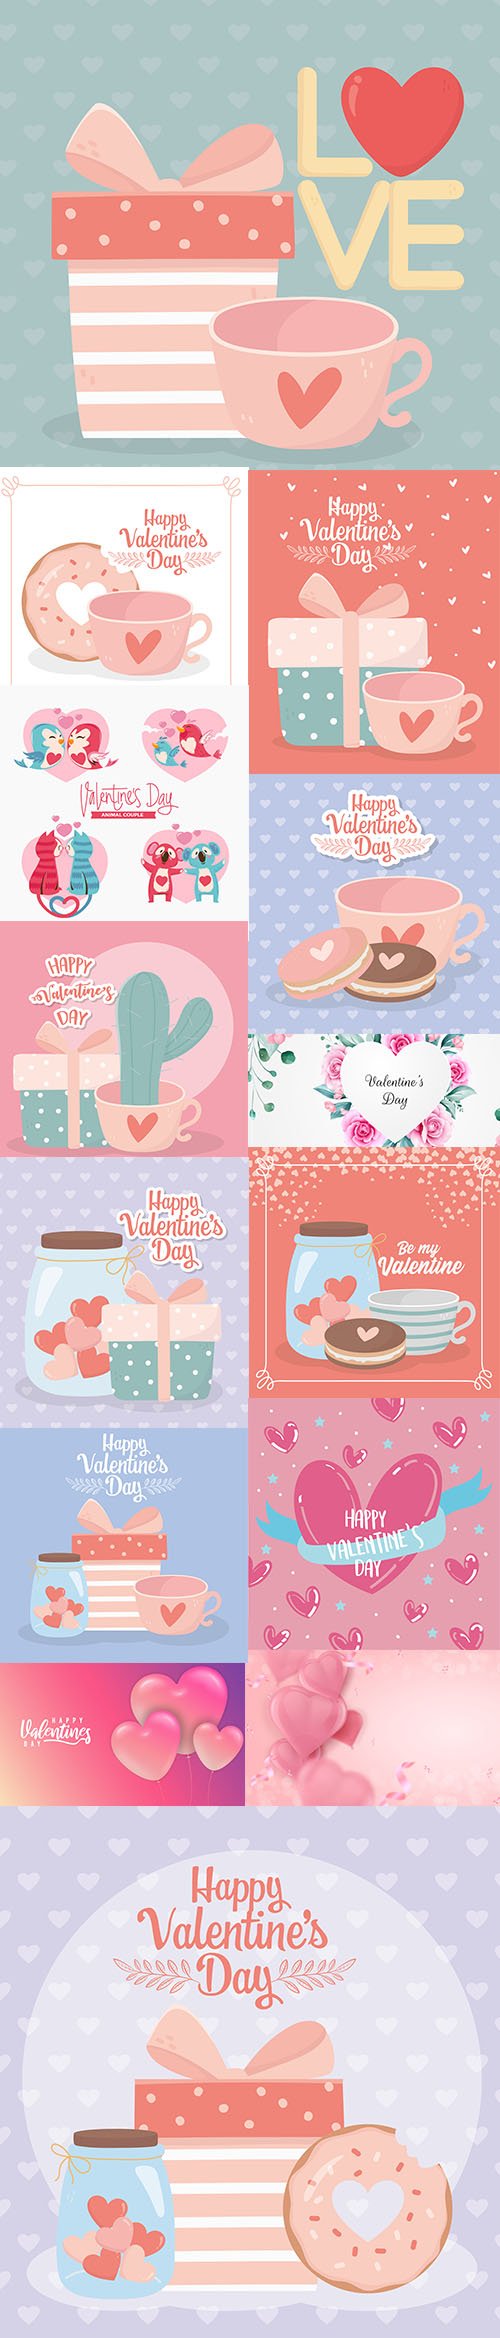 Happy Valentines Day Illustration Set Vol 6